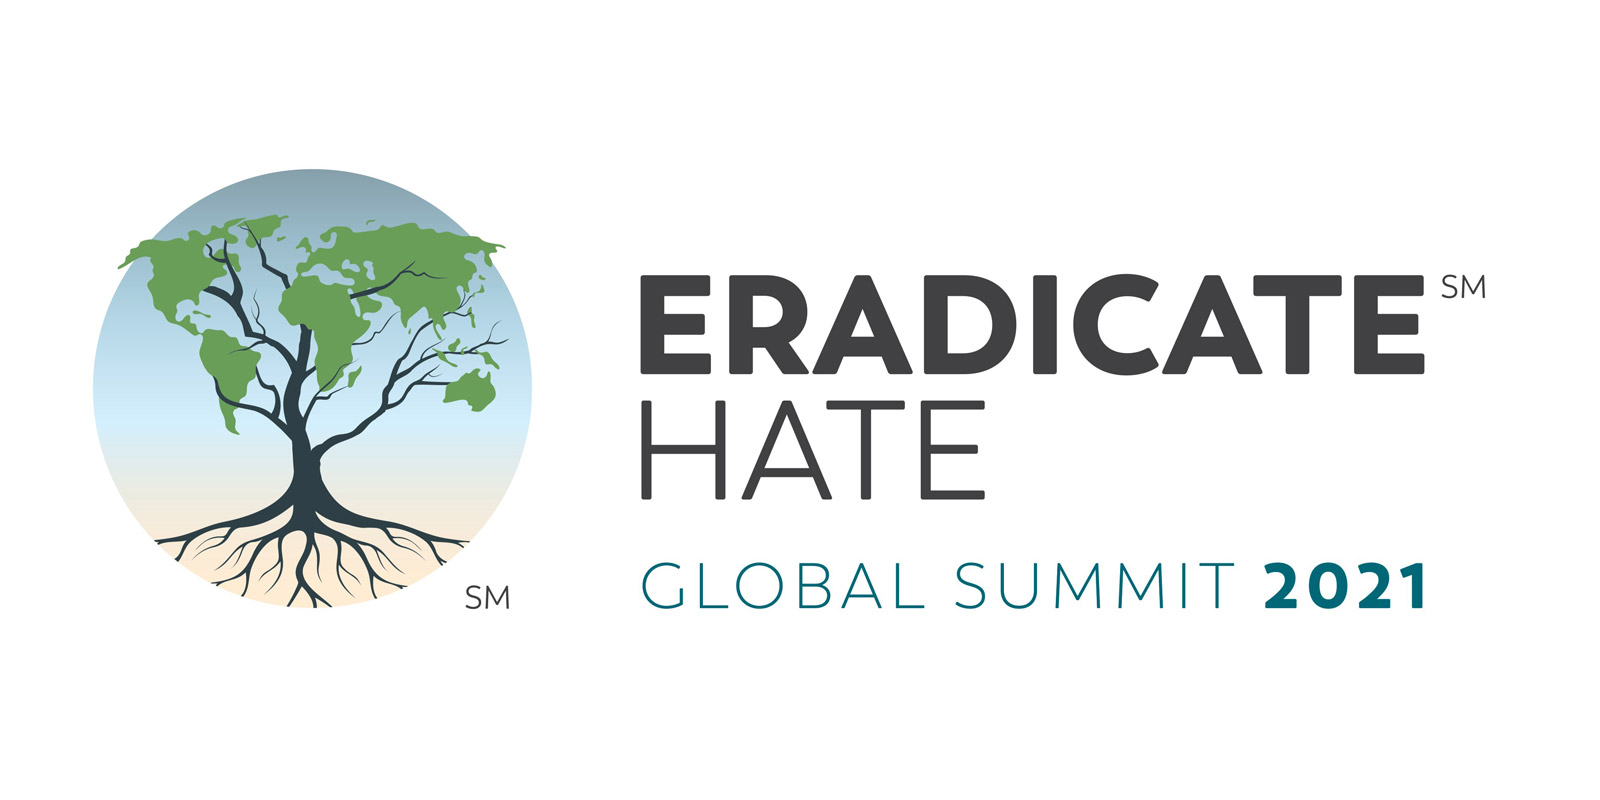 Eradicate_Hate_Global_Summit_2021_1600x800